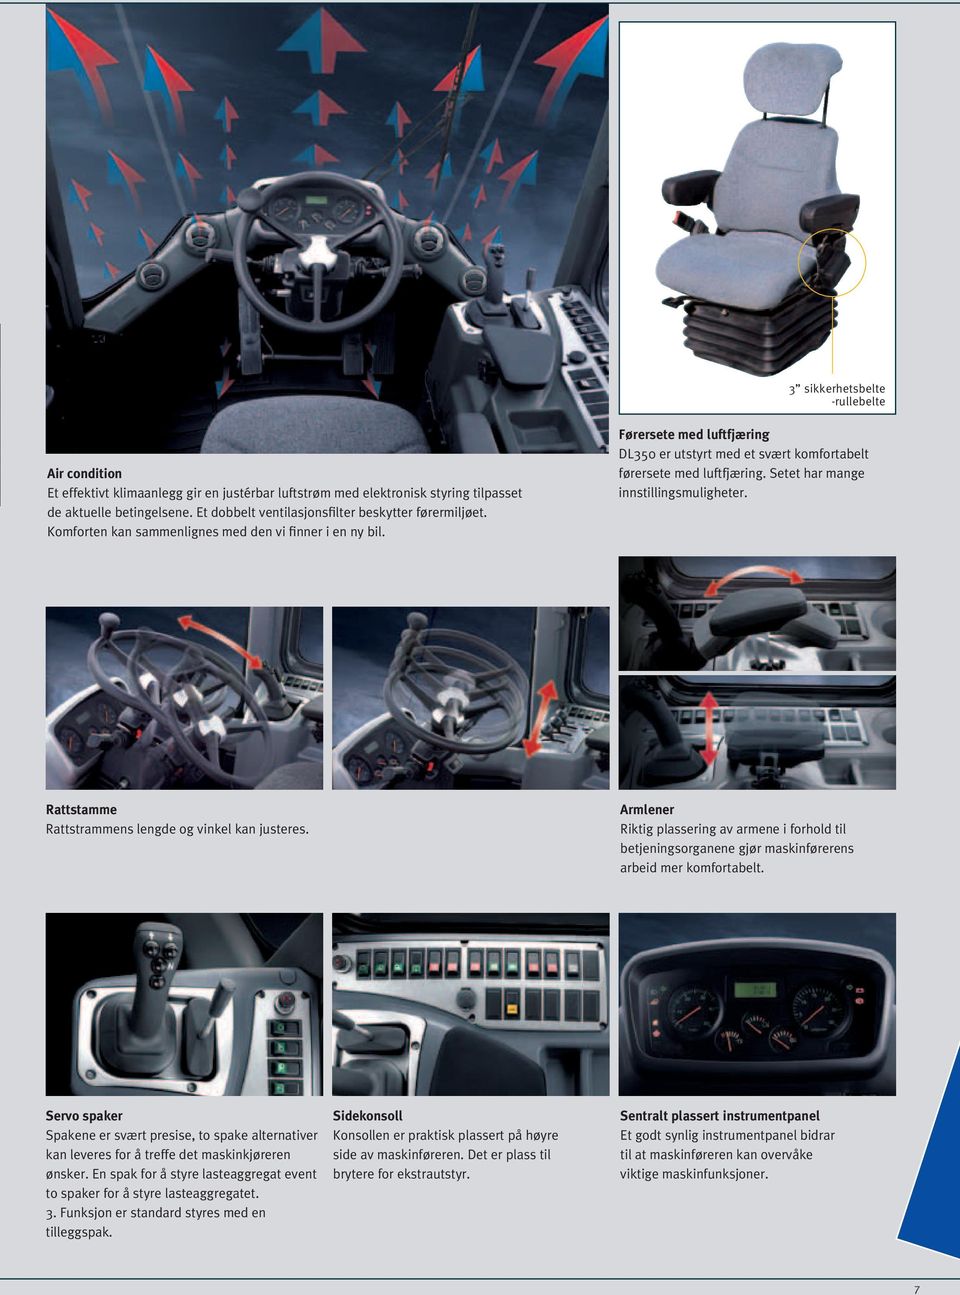 Førersete med luftfjæring DL350 er utstyrt med et svært komfortabelt førersete med luftfjæring. Setet har mange innstillingsmuligheter. Rattstamme Rattstrammens lengde og vinkel kan justeres.